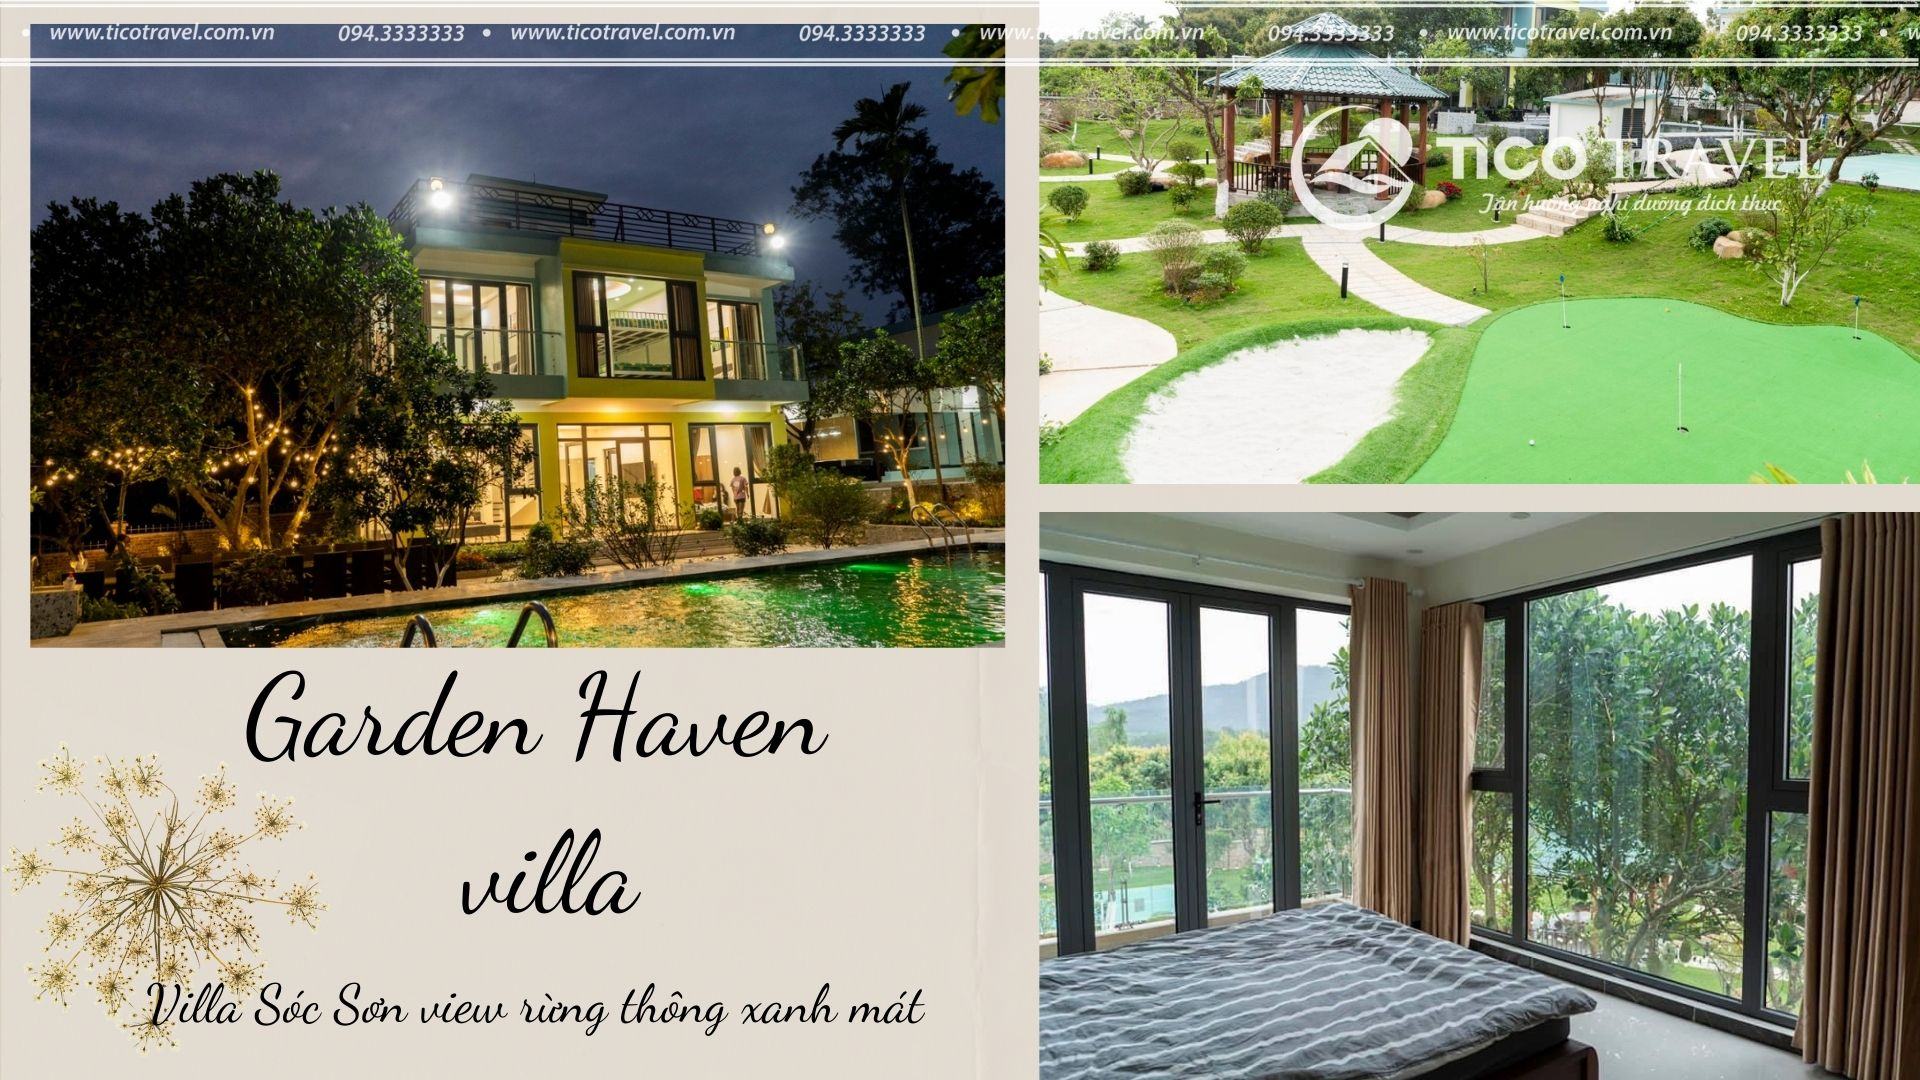 ảnh chụp Tico 03 - Garden haven villa gần Hà Nội